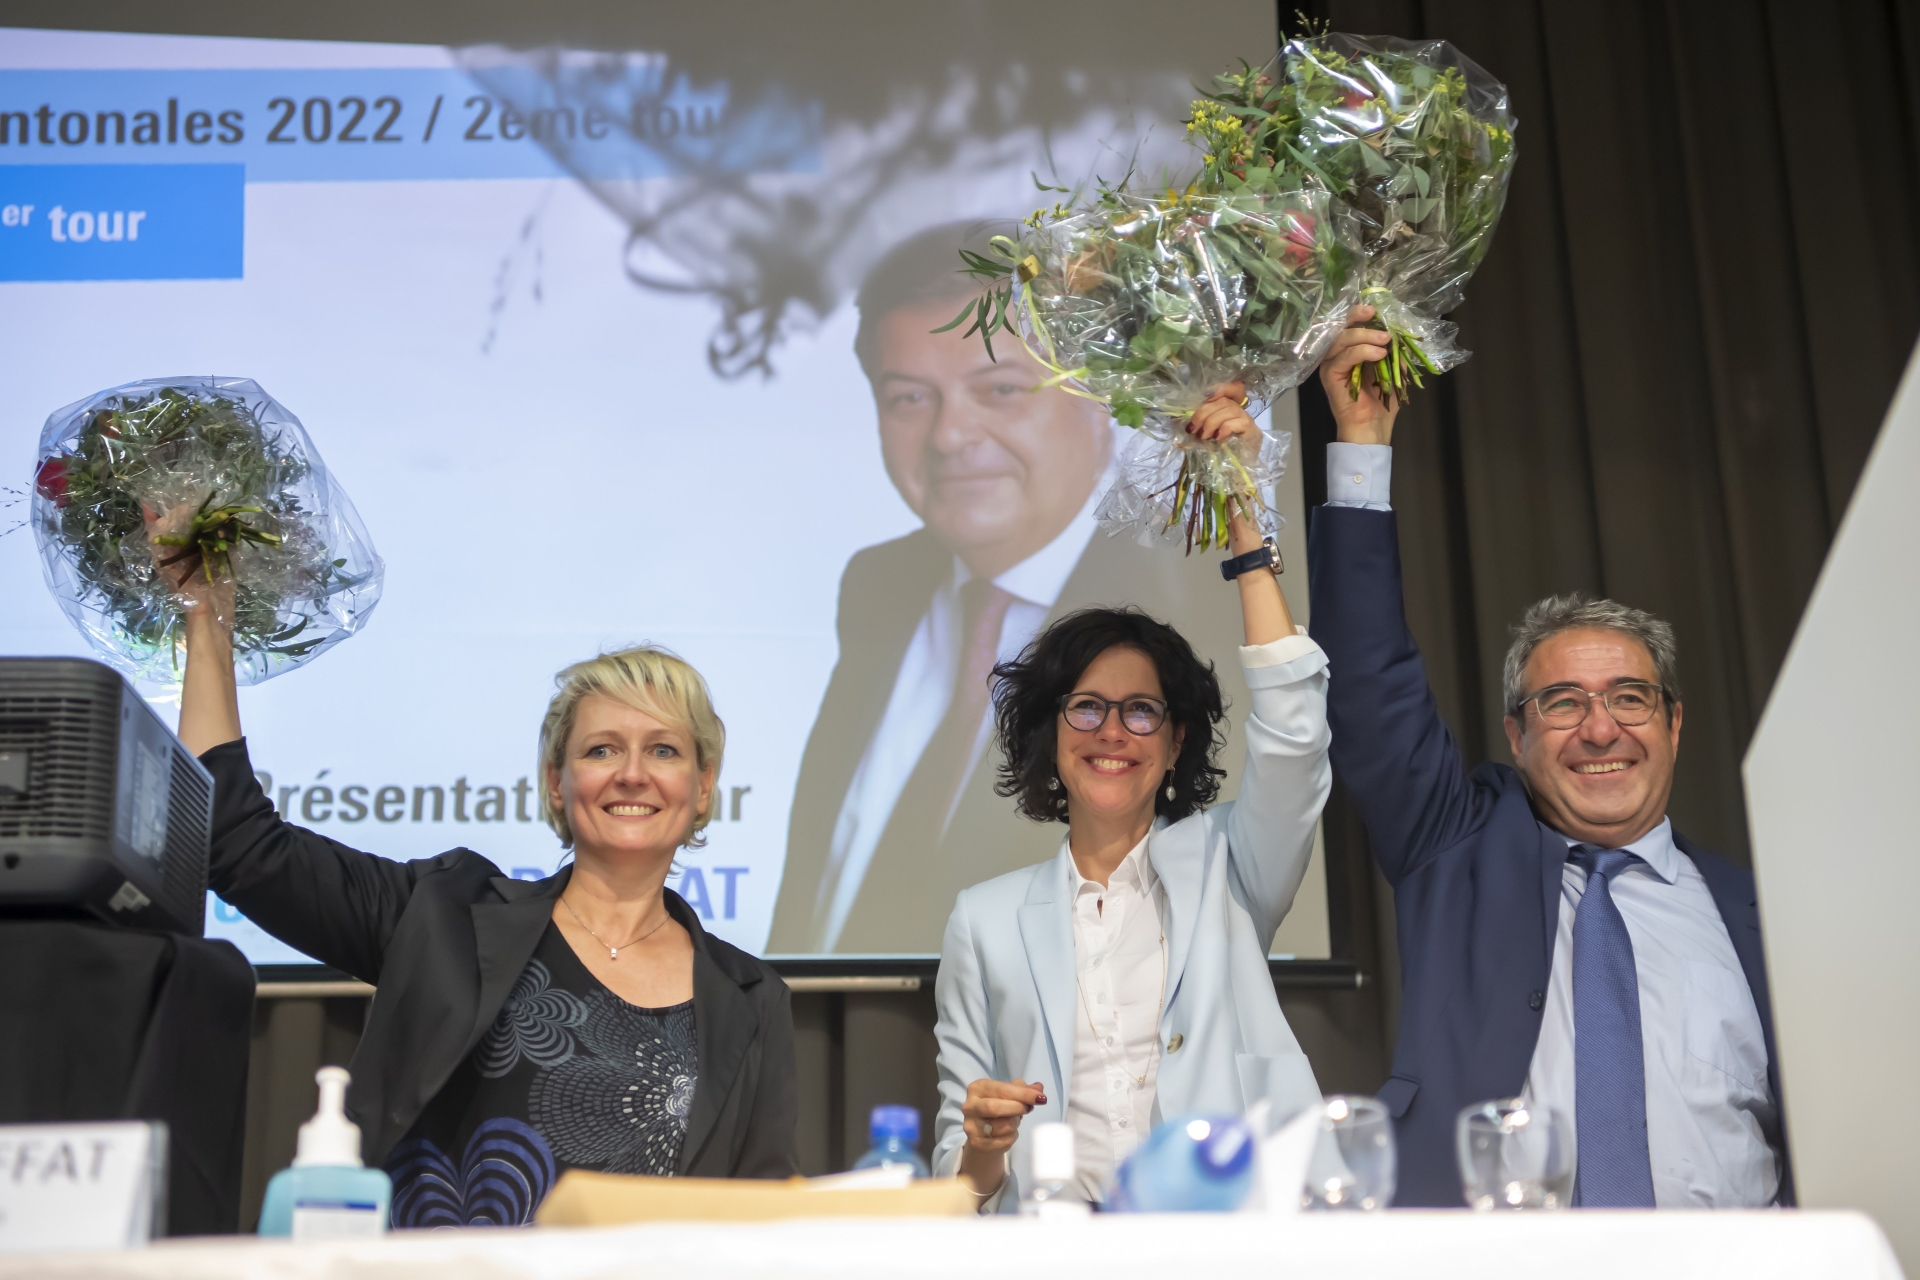  Isabelle Moret, Christelle Luisier et Frédéric Borloz ont été choisis pour représenter le PLR aux élections cantonales vaudoises.